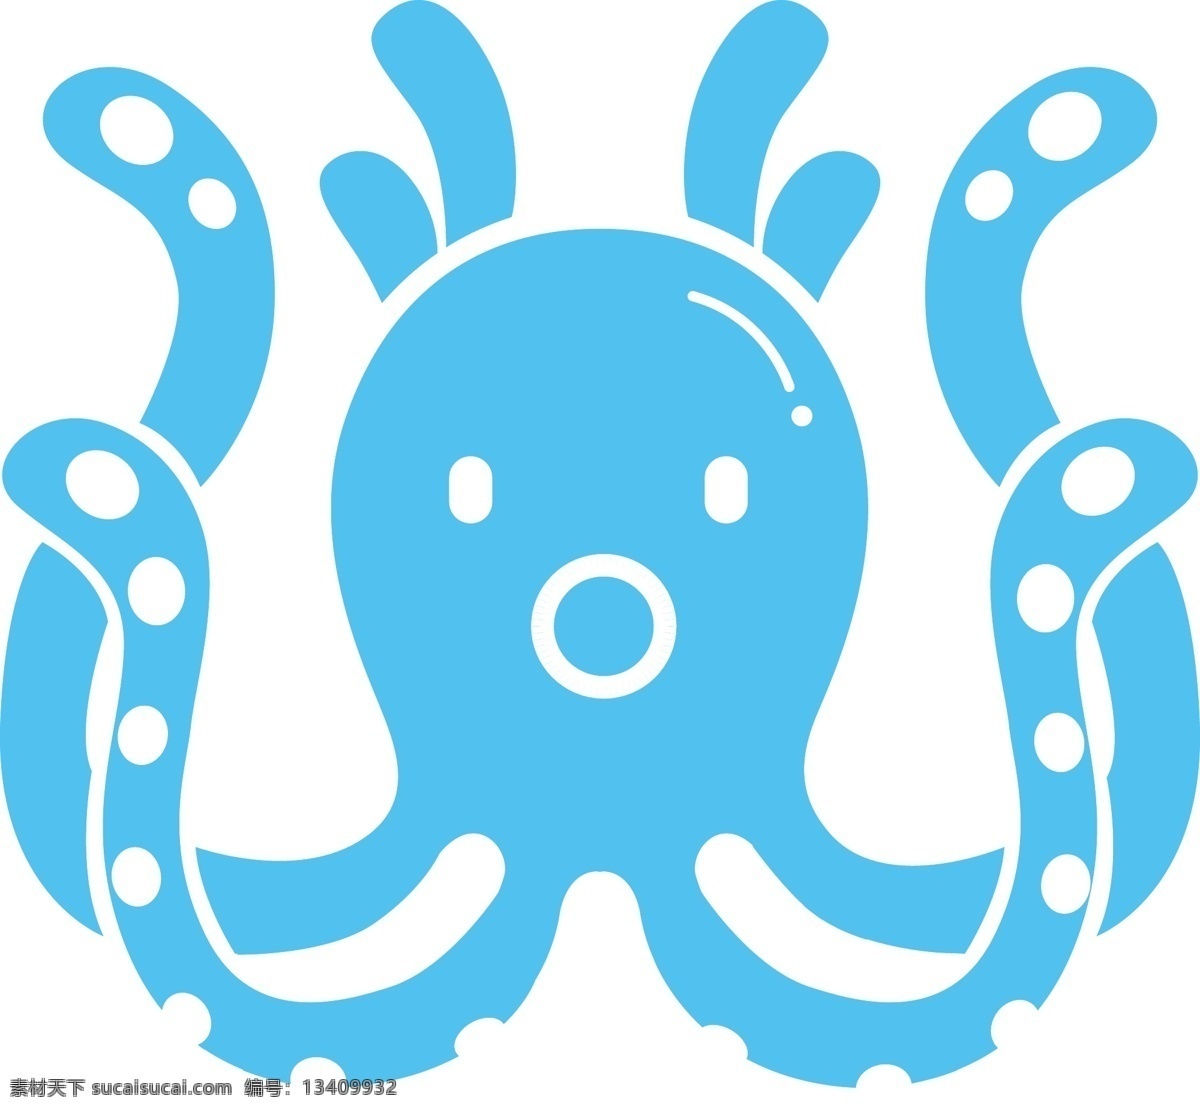 蓝色章鱼 蓝色 章鱼 矢量 icon 动物 海洋 图标 矢量icon 标志图标 其他图标